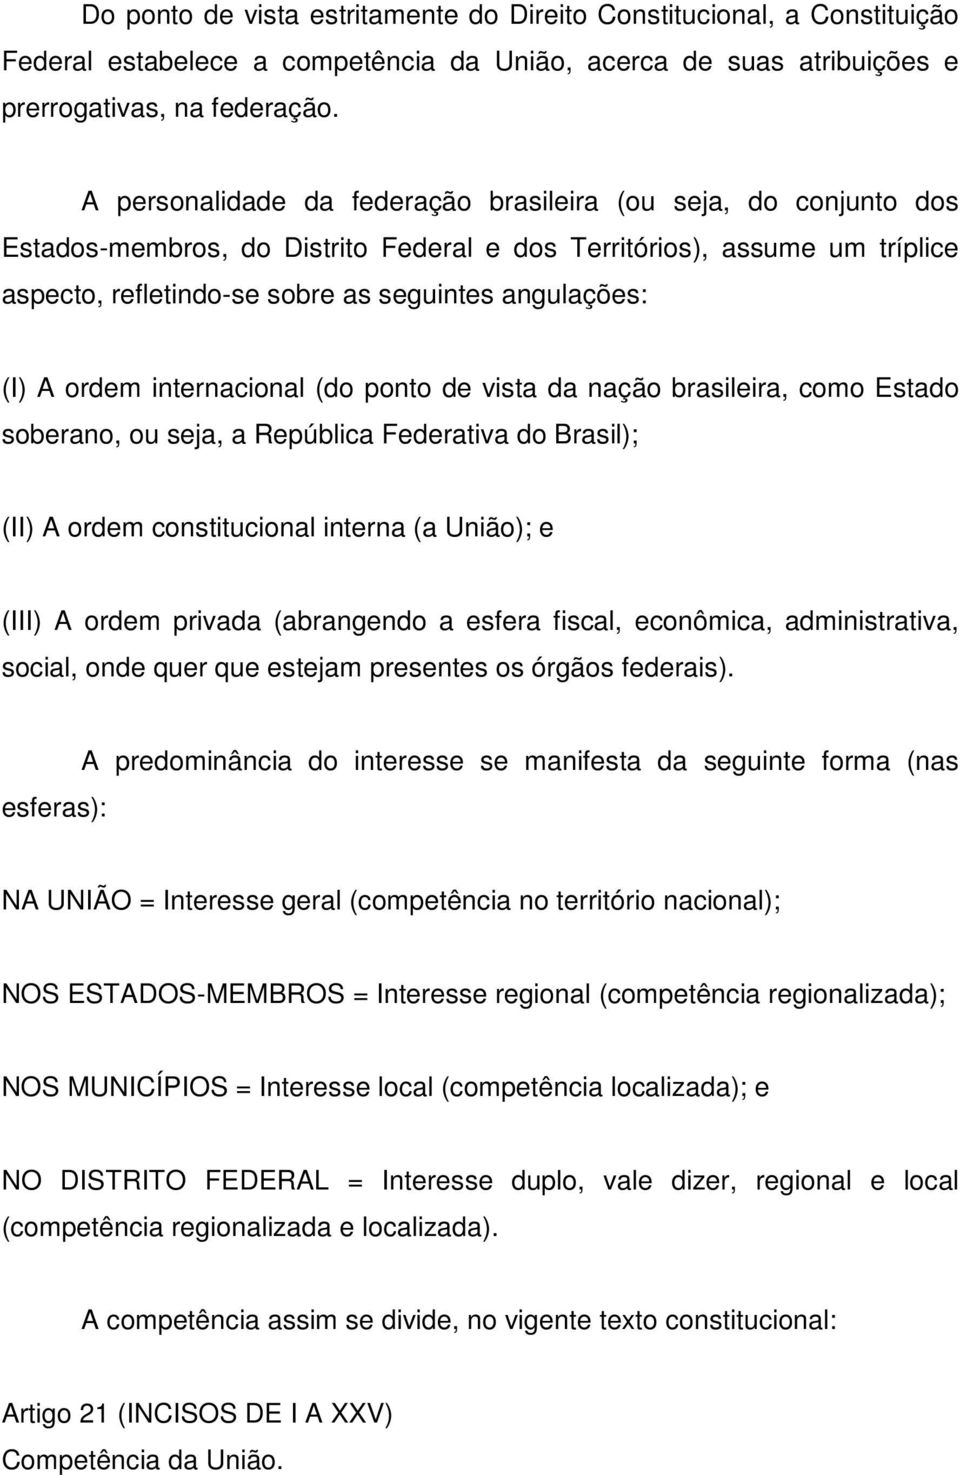 A ordem internacional (do ponto de vista da nação brasileira, como Estado soberano, ou seja, a República Federativa do Brasil); (II) A ordem constitucional interna (a União); e (III) A ordem privada